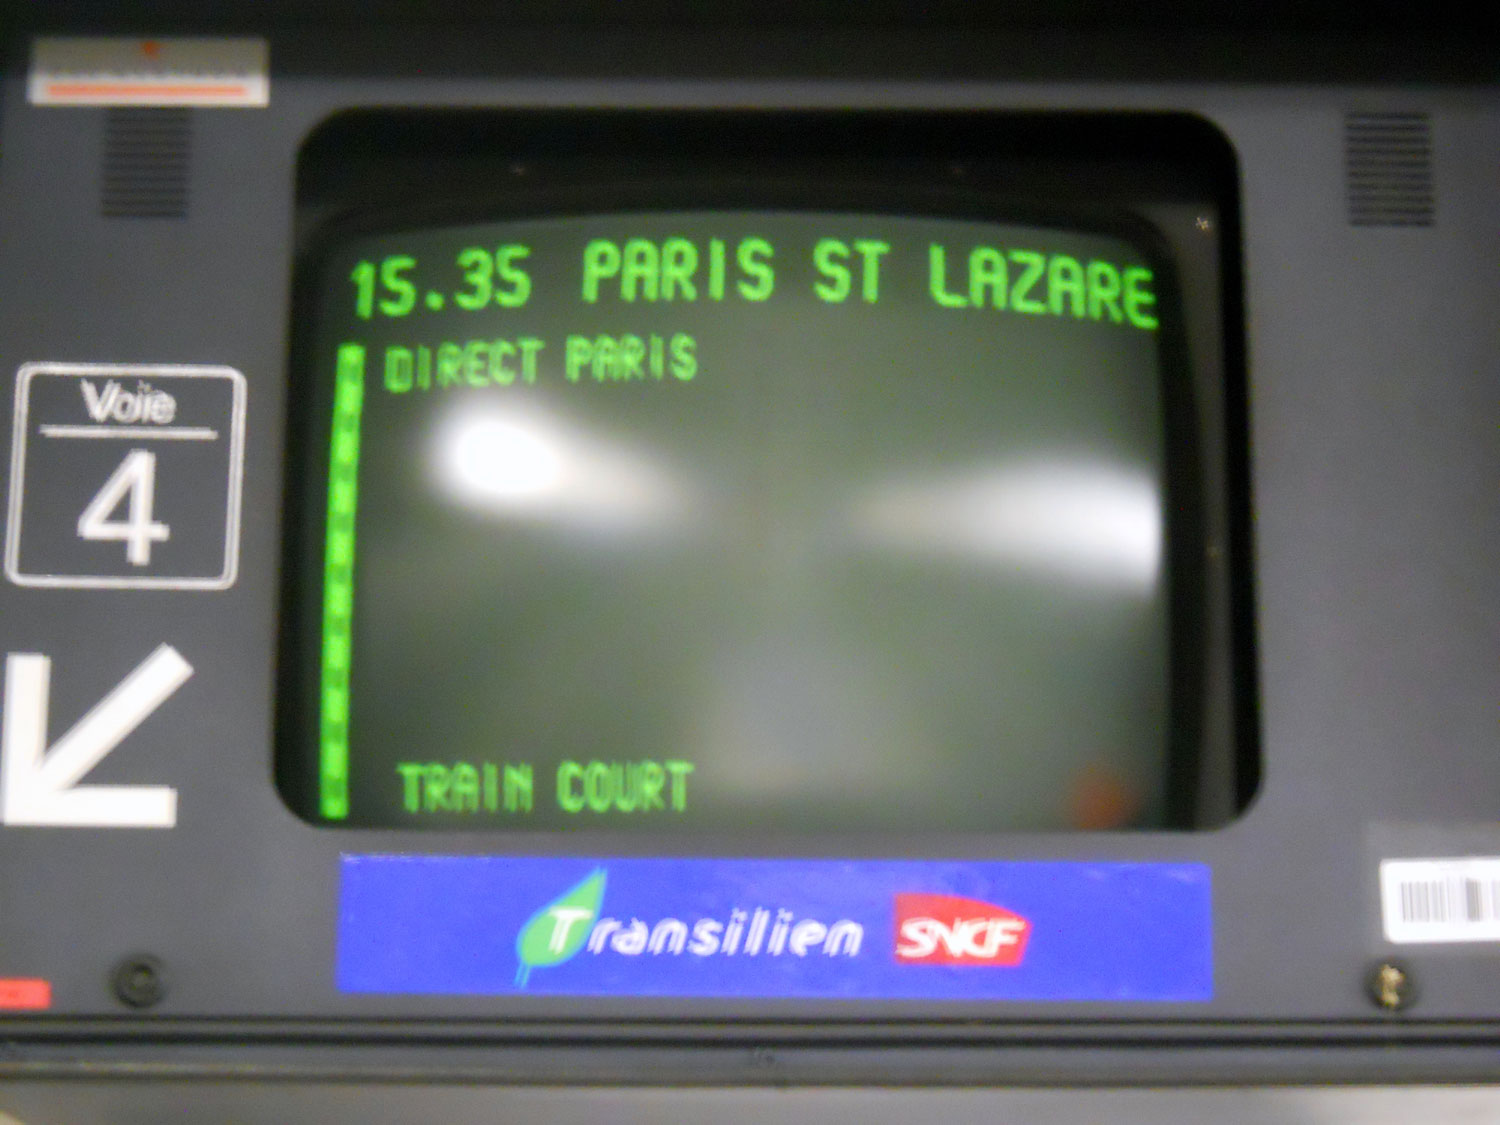 transporte público em paris